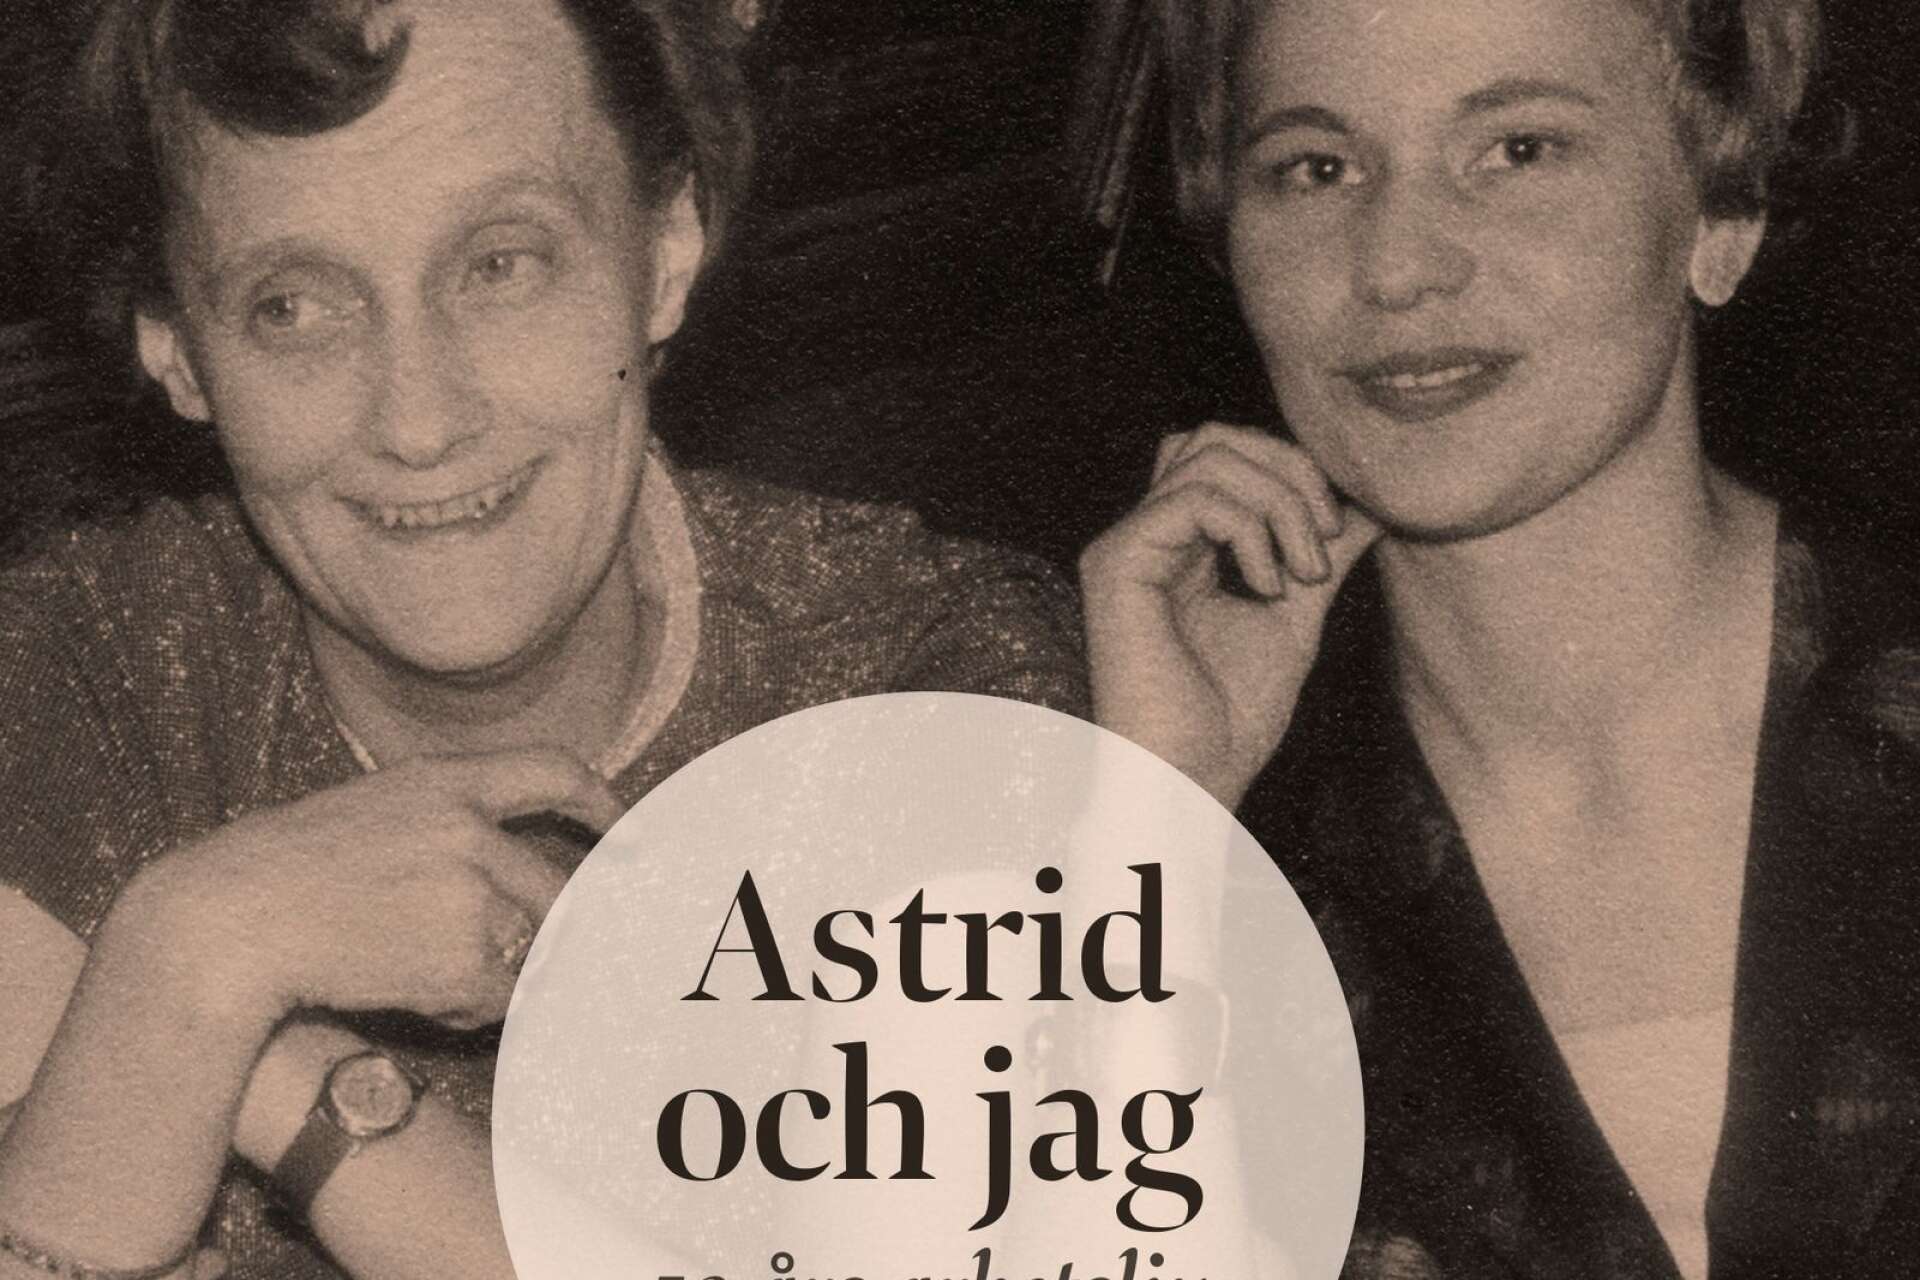 Astrid Lindgren och Kerstin Kvint tillsammans på omslaget till boken ”Astrid och jag: 50 års arbetsliv&quot;.